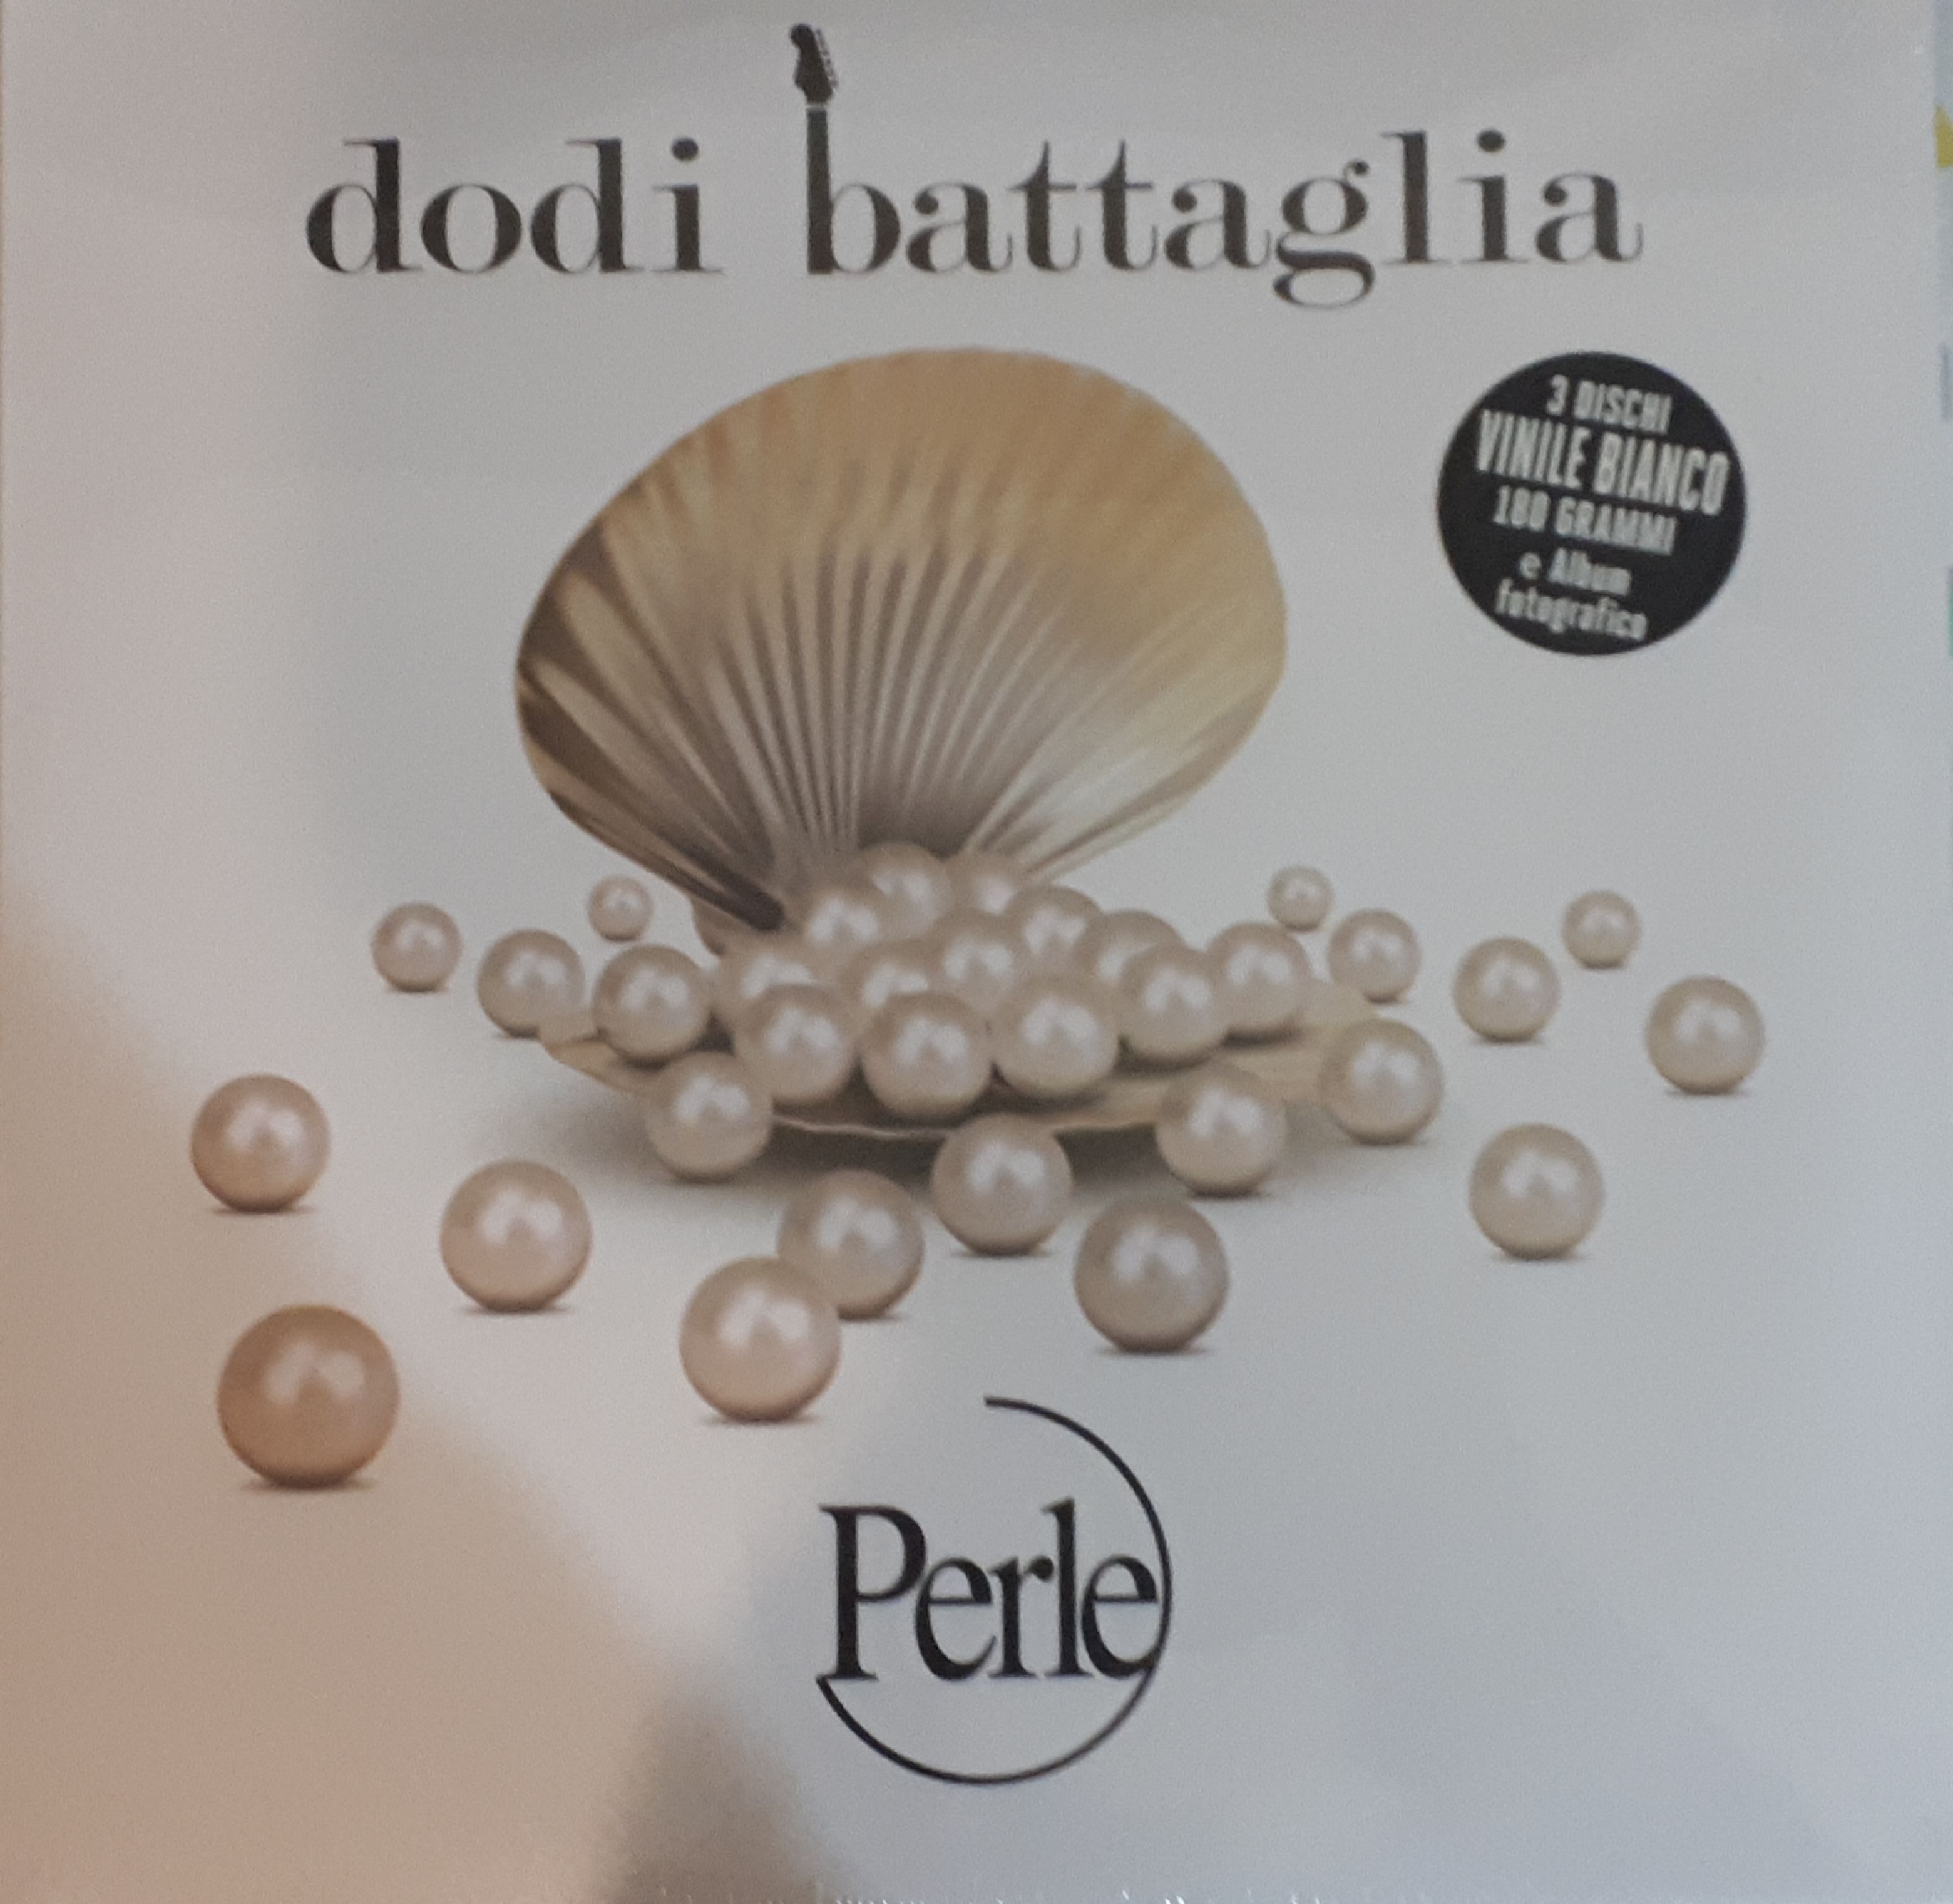 Dodi Battaglia - Perle 